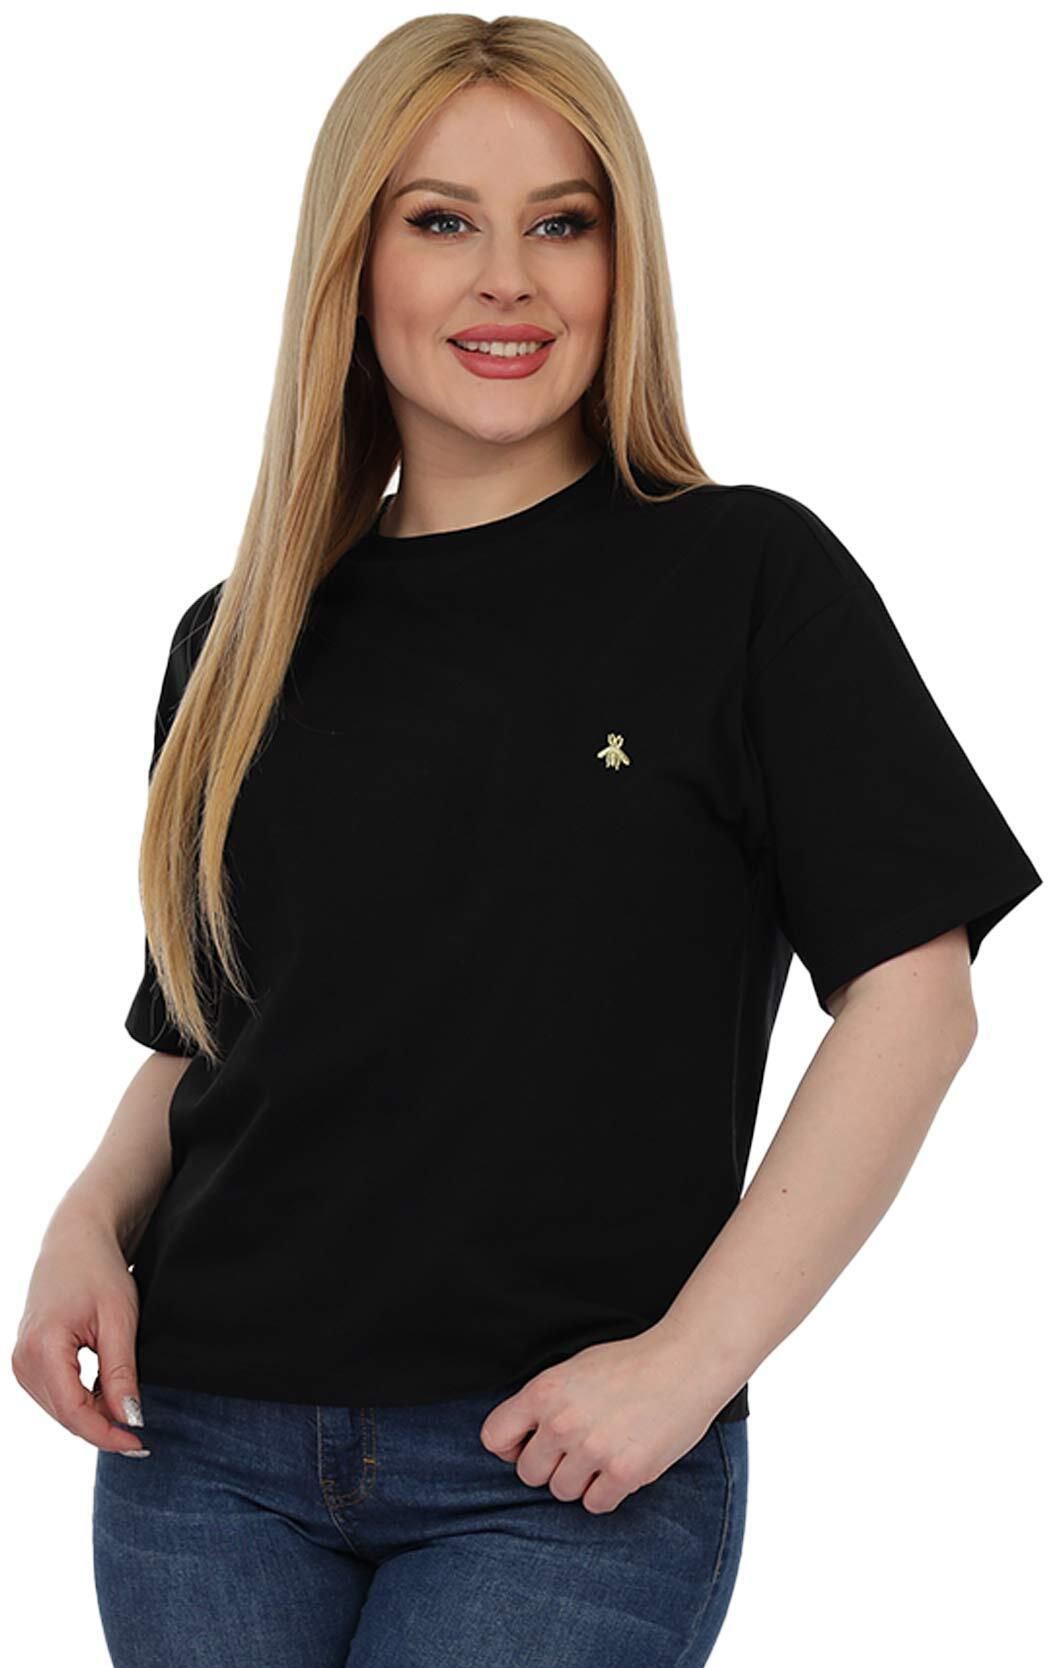 La Collection T-Shirt for Women - 2X Large - Black